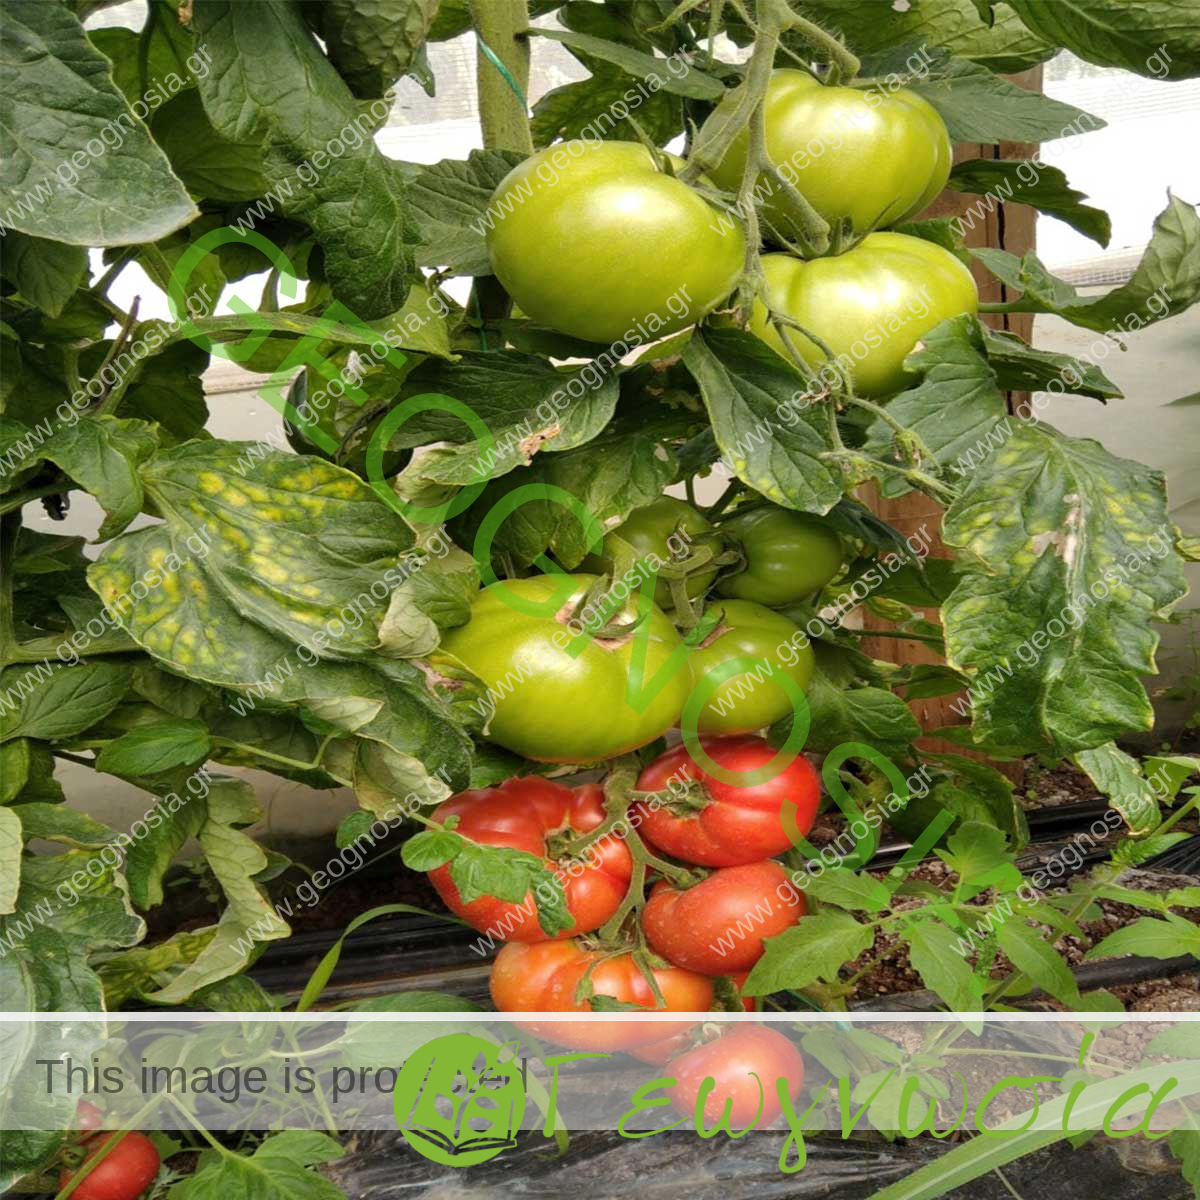 sporoi-anarrichomenis-tomatas-katon-f1-geoponiki